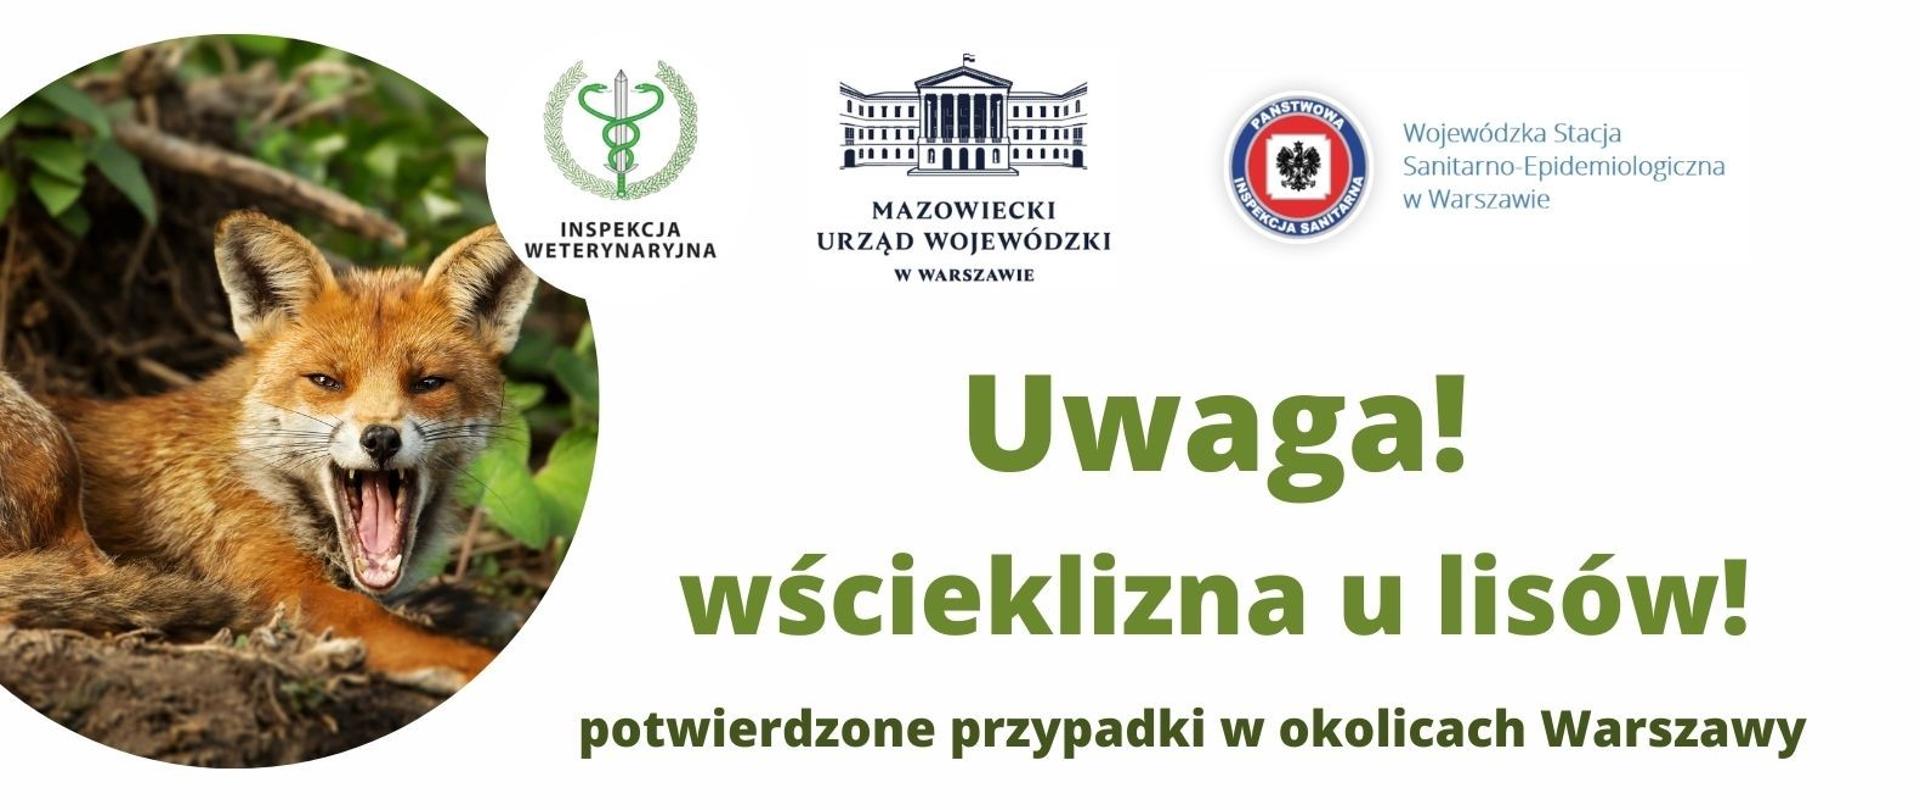 Plakat informujący o potwierdzonych przypadkach wścieklizny u lisów w okolicach Warszawy